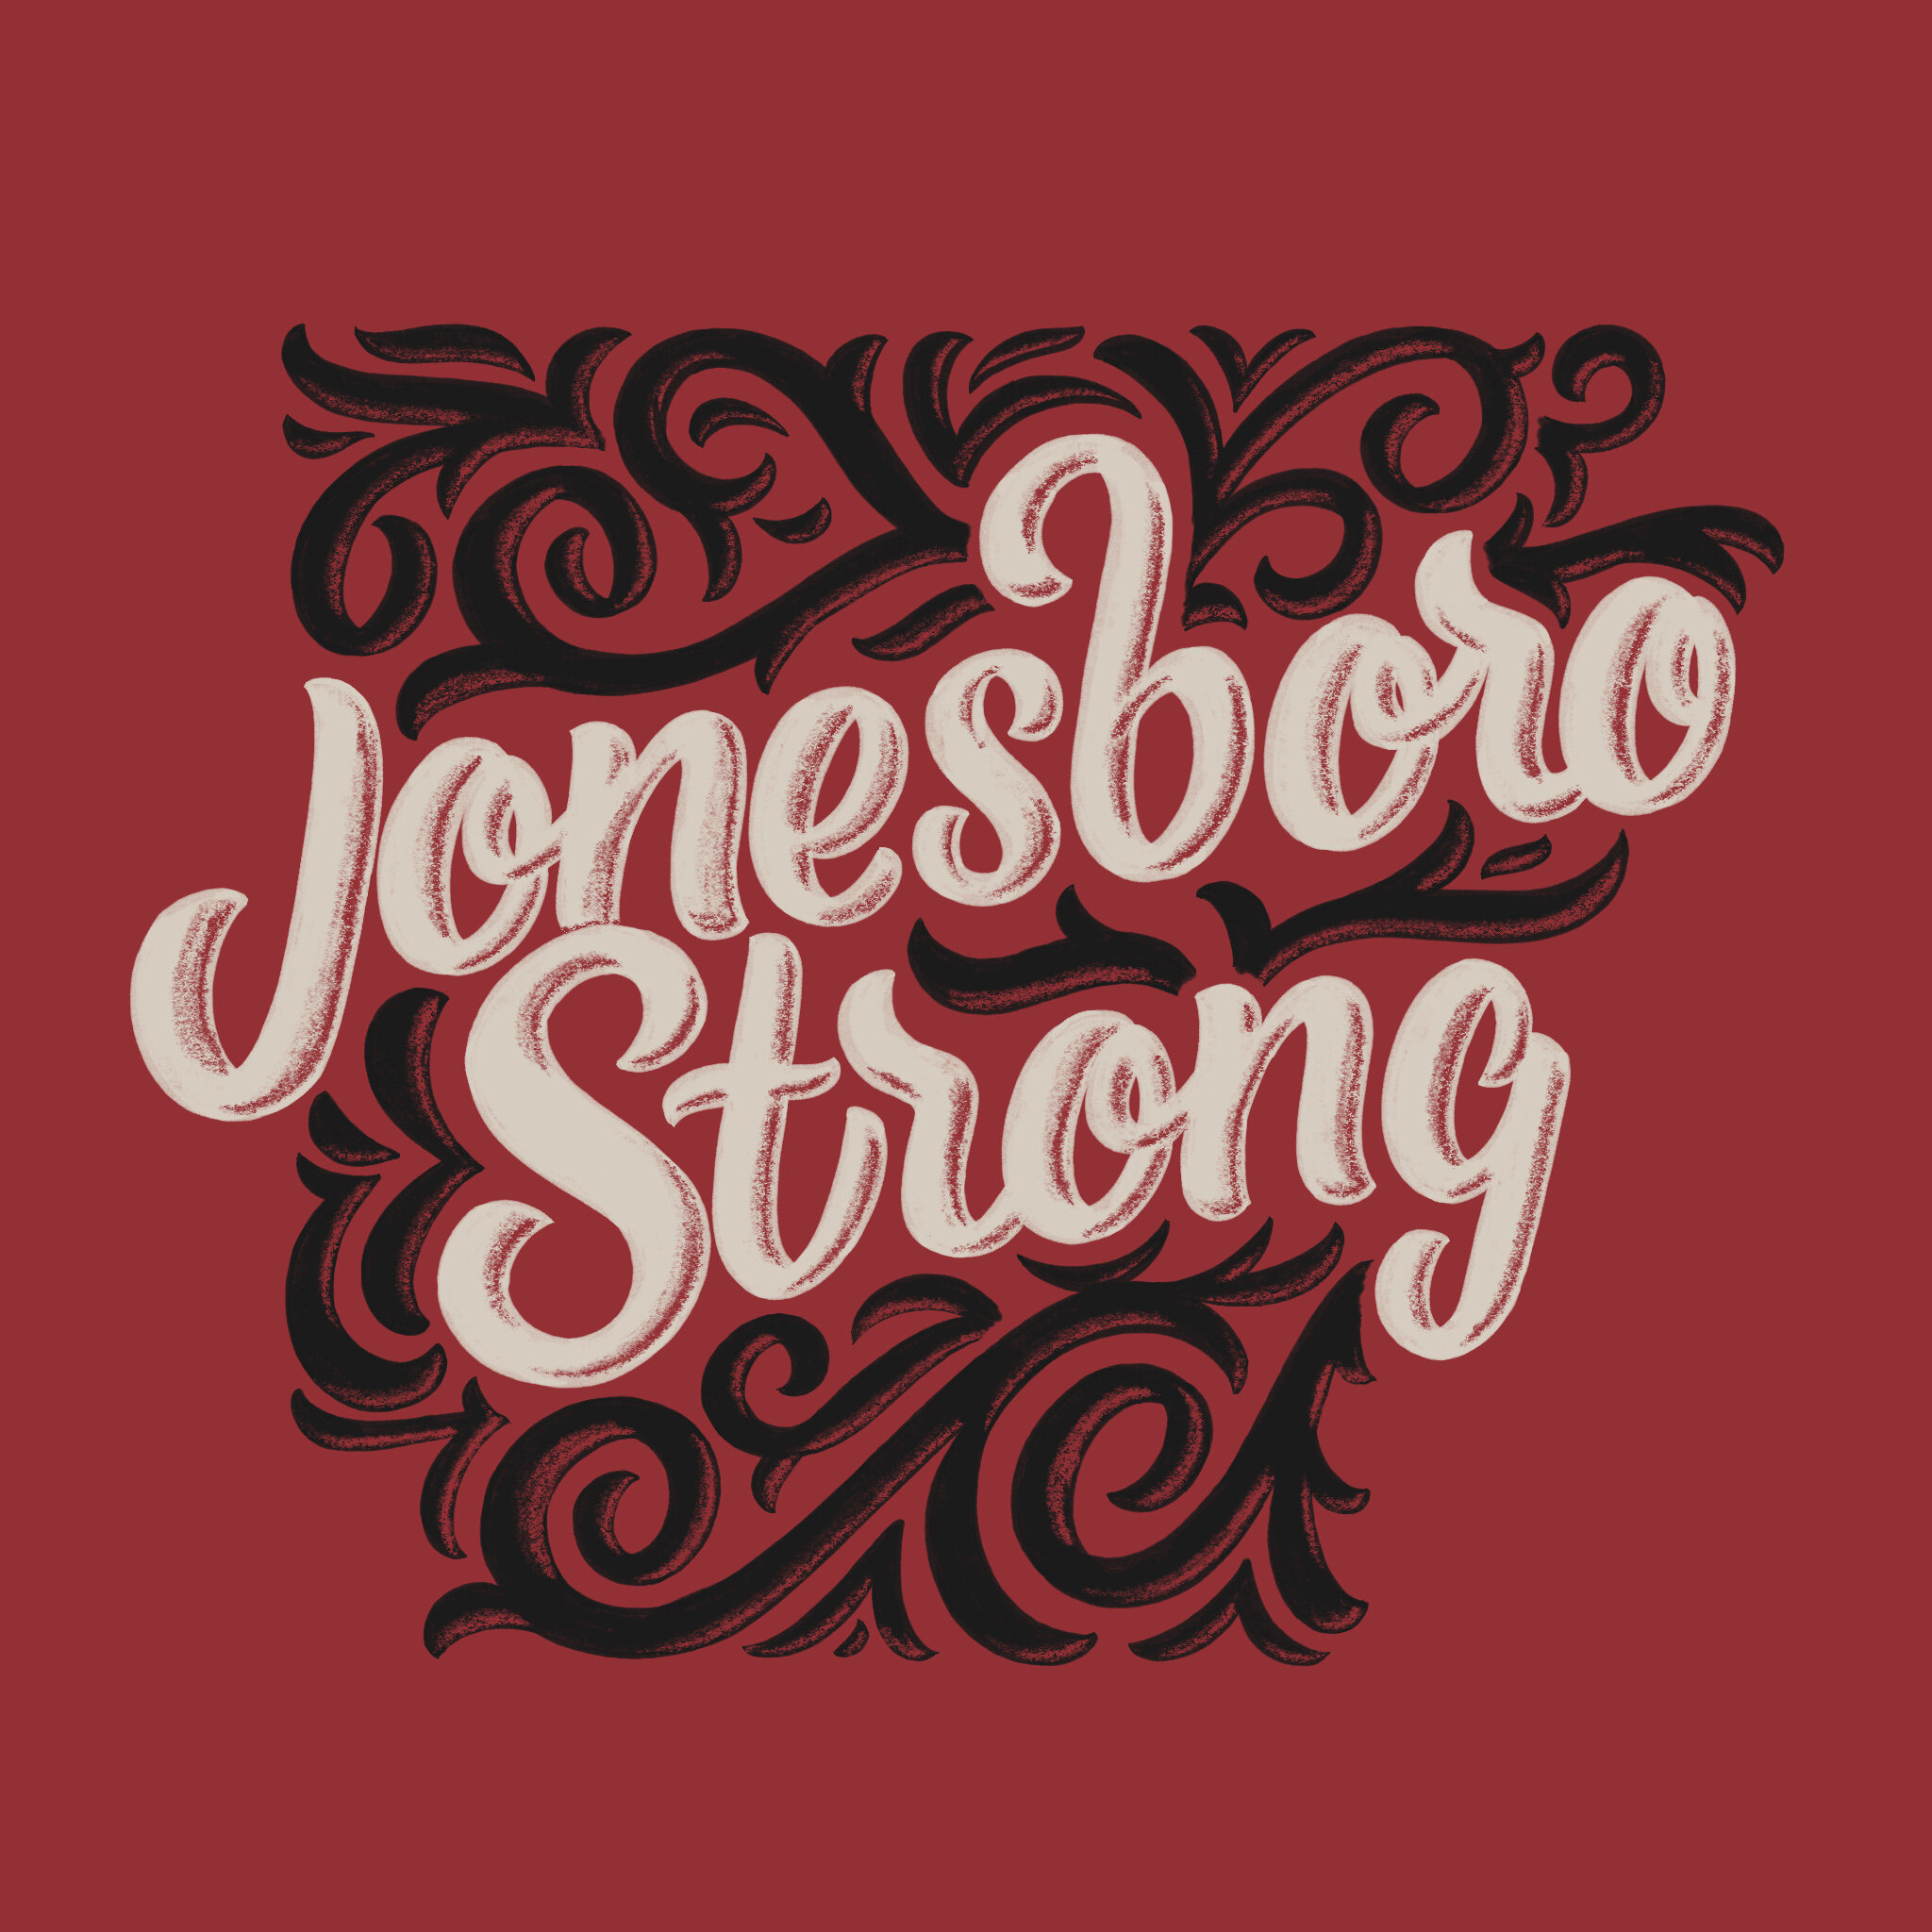 Jonesboro Strong - Red.jpg